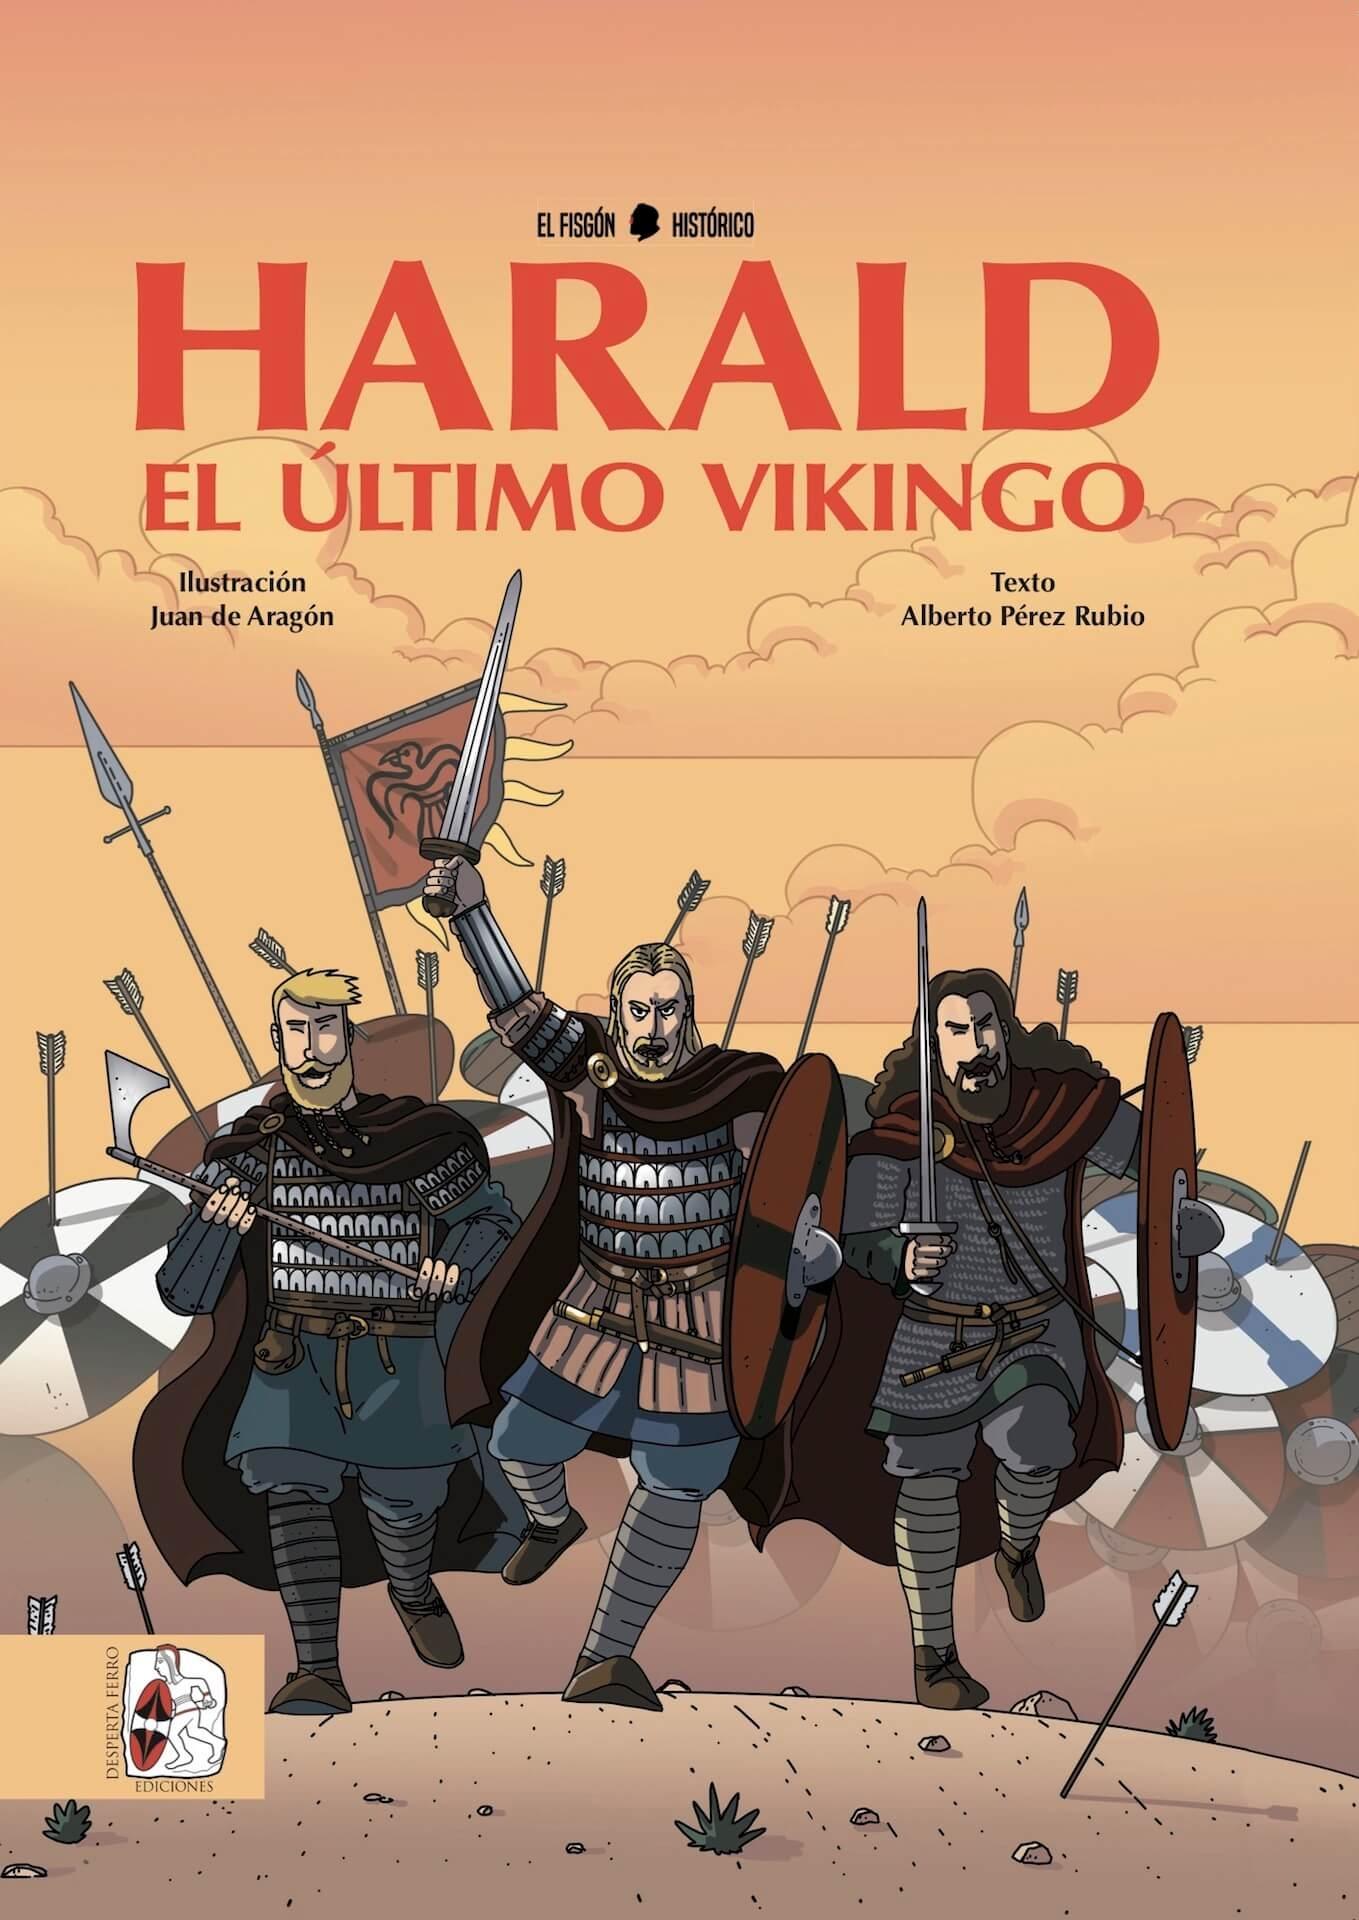 Harald "El Último Vikingo"